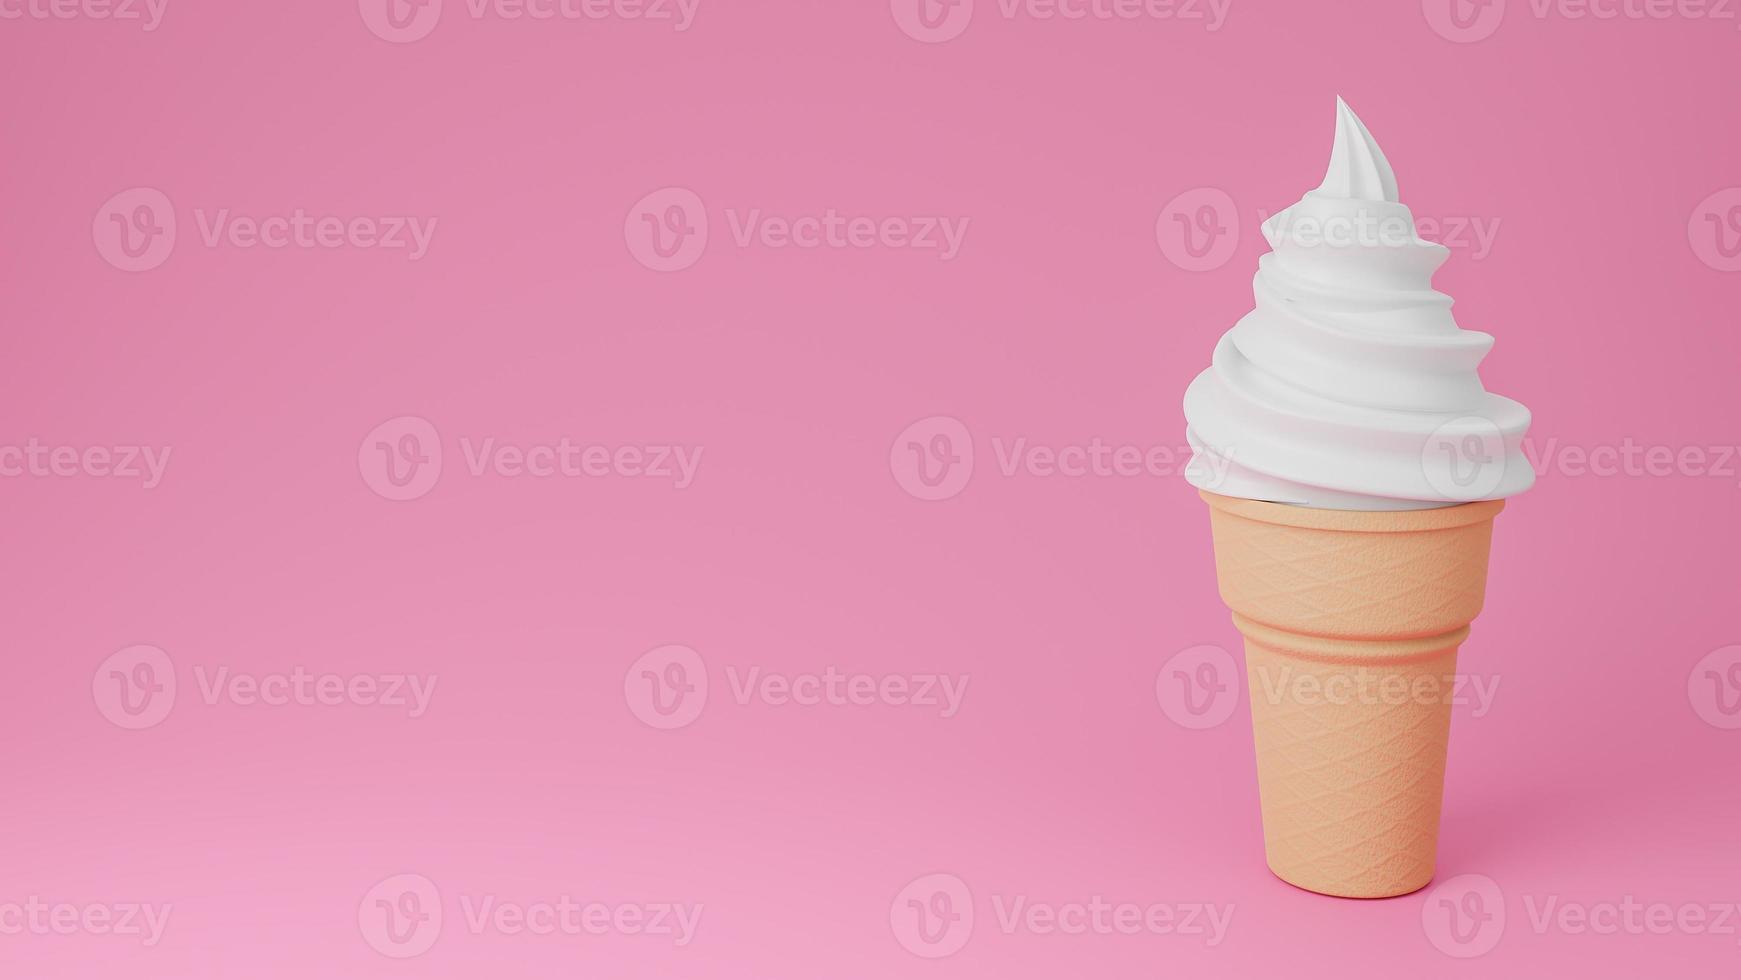 sorvete de sorvete de baunilha ou leite no cone crocante no fundo rosa., modelo 3d e ilustração. foto